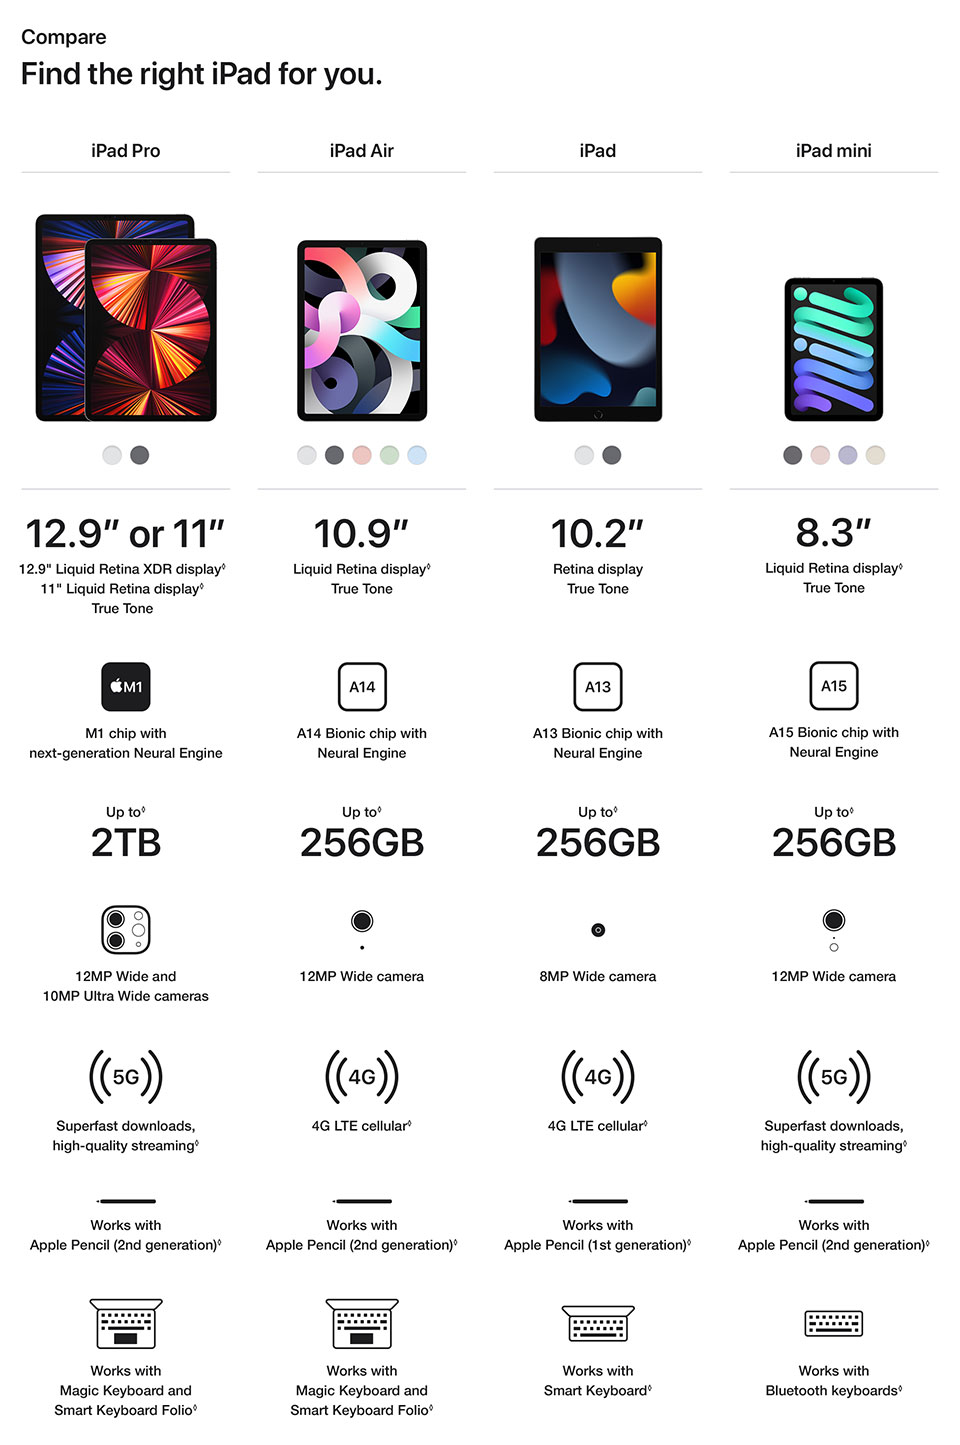 Compare iPad models | csl